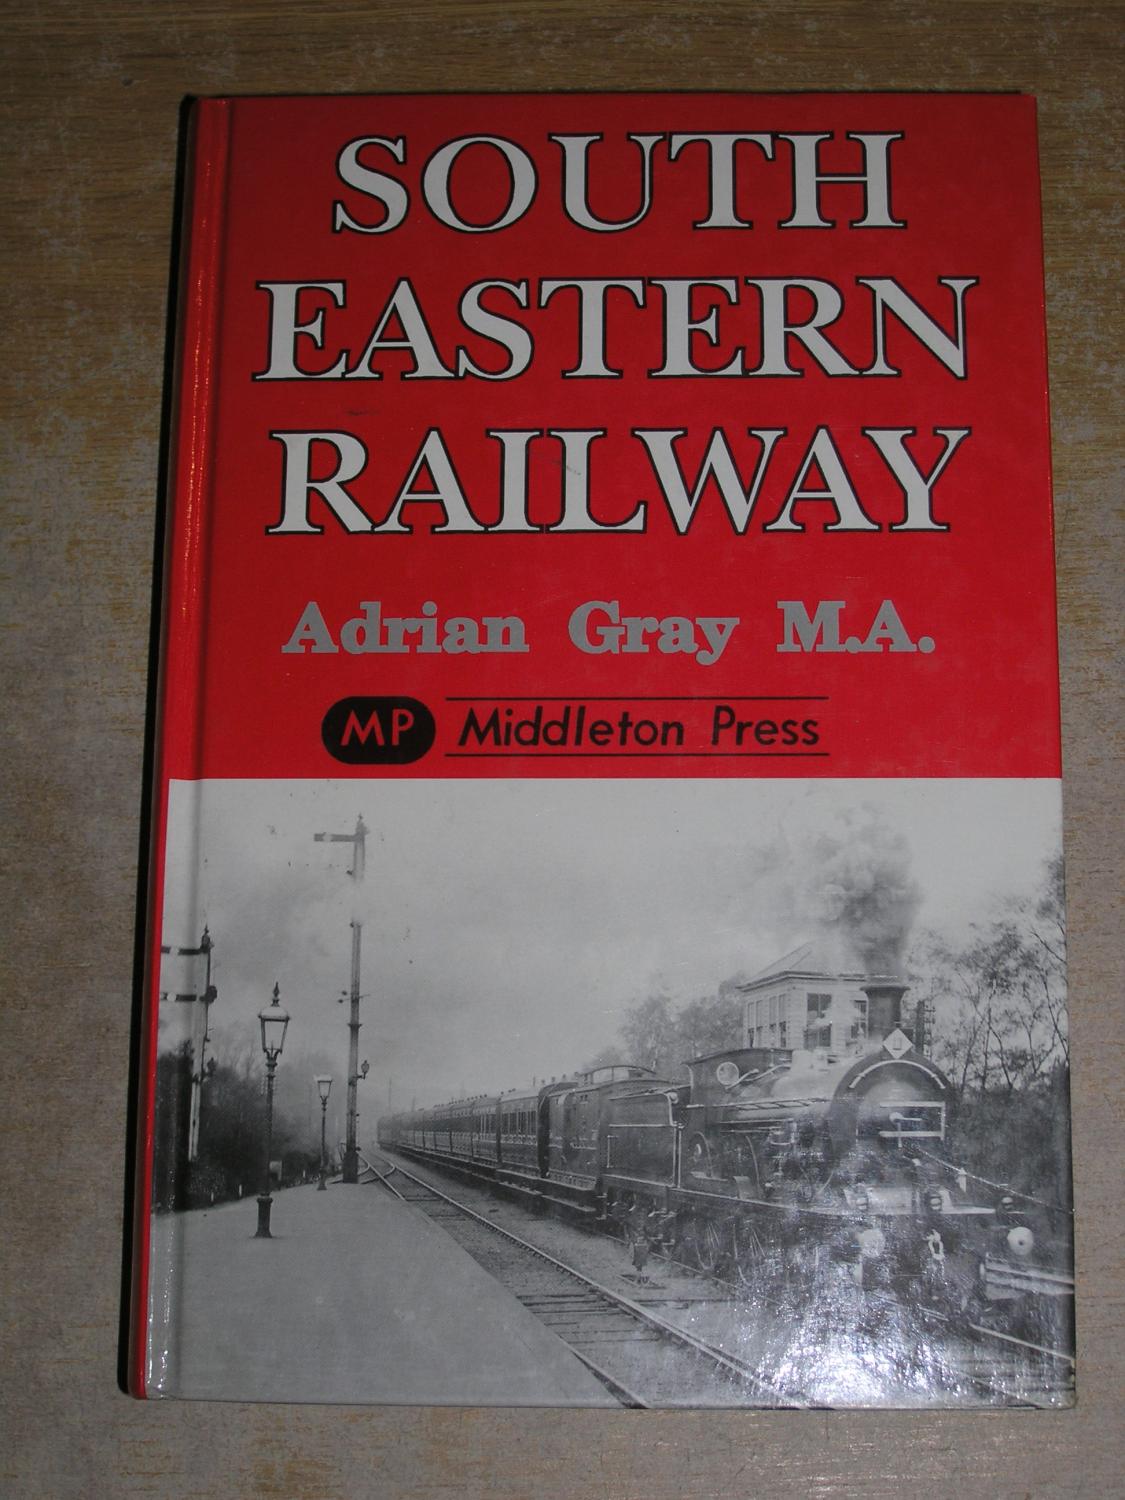 South Eastern Railway - Adrian Gray